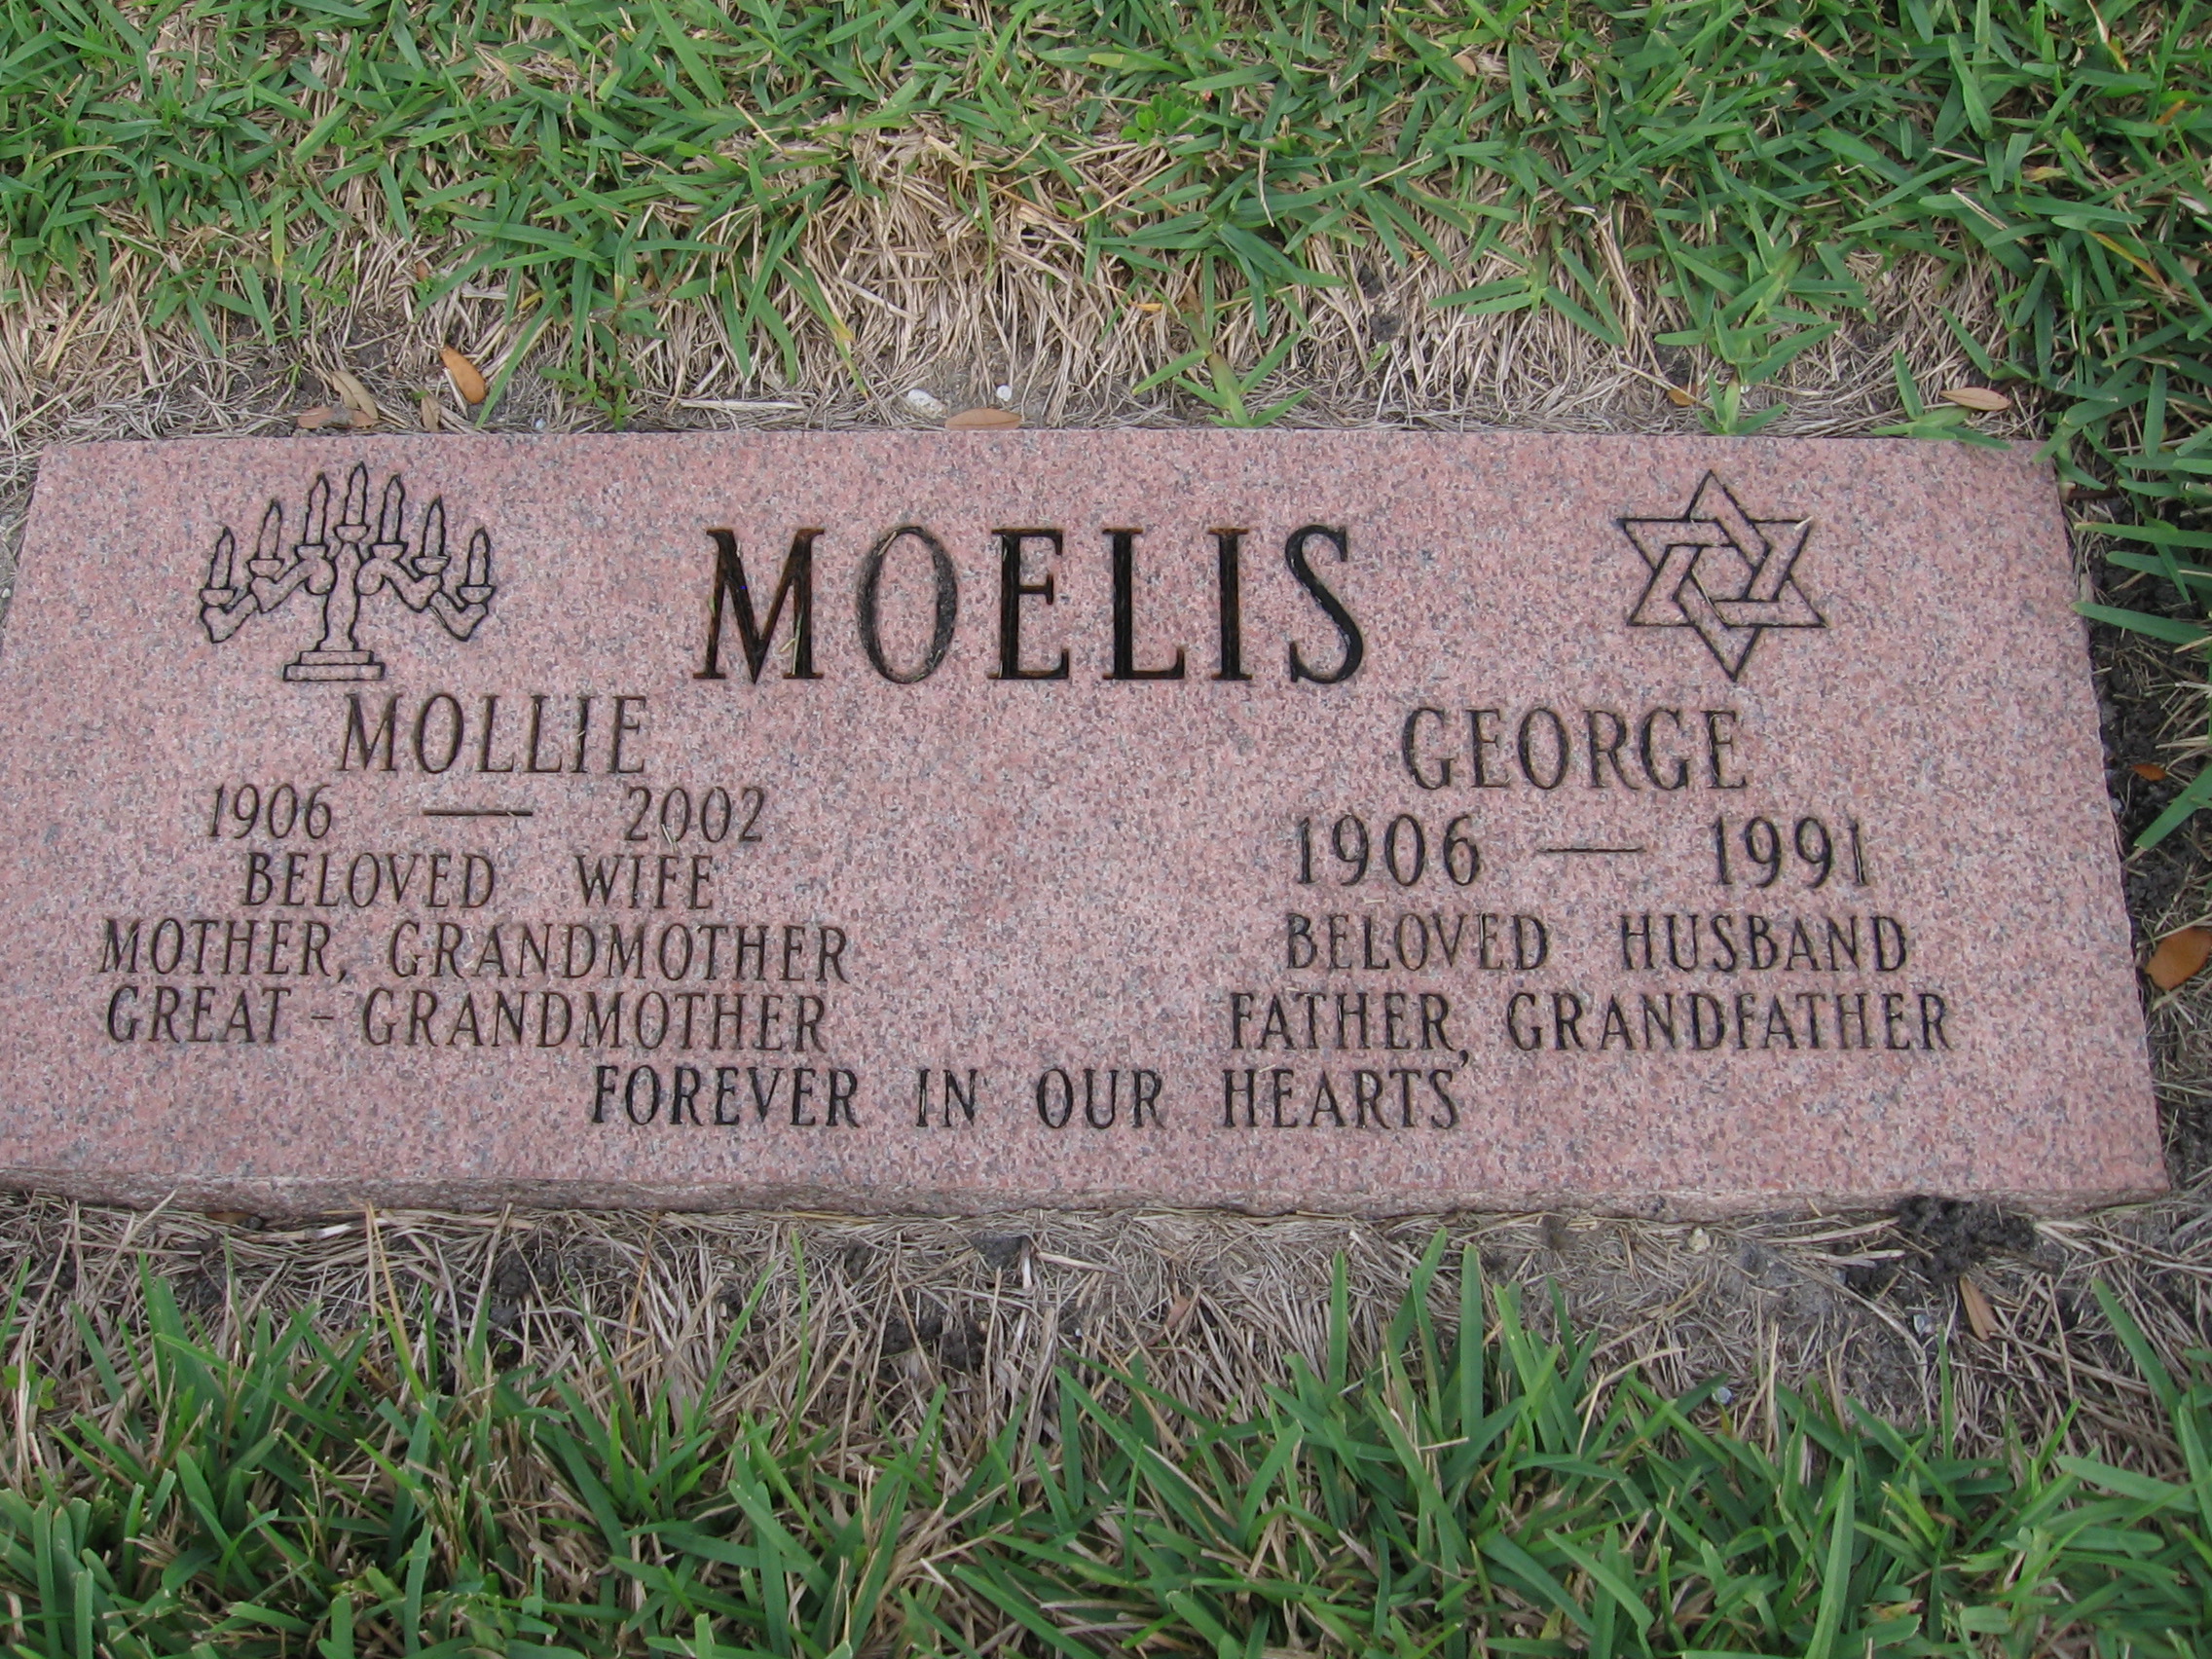 George Moelis